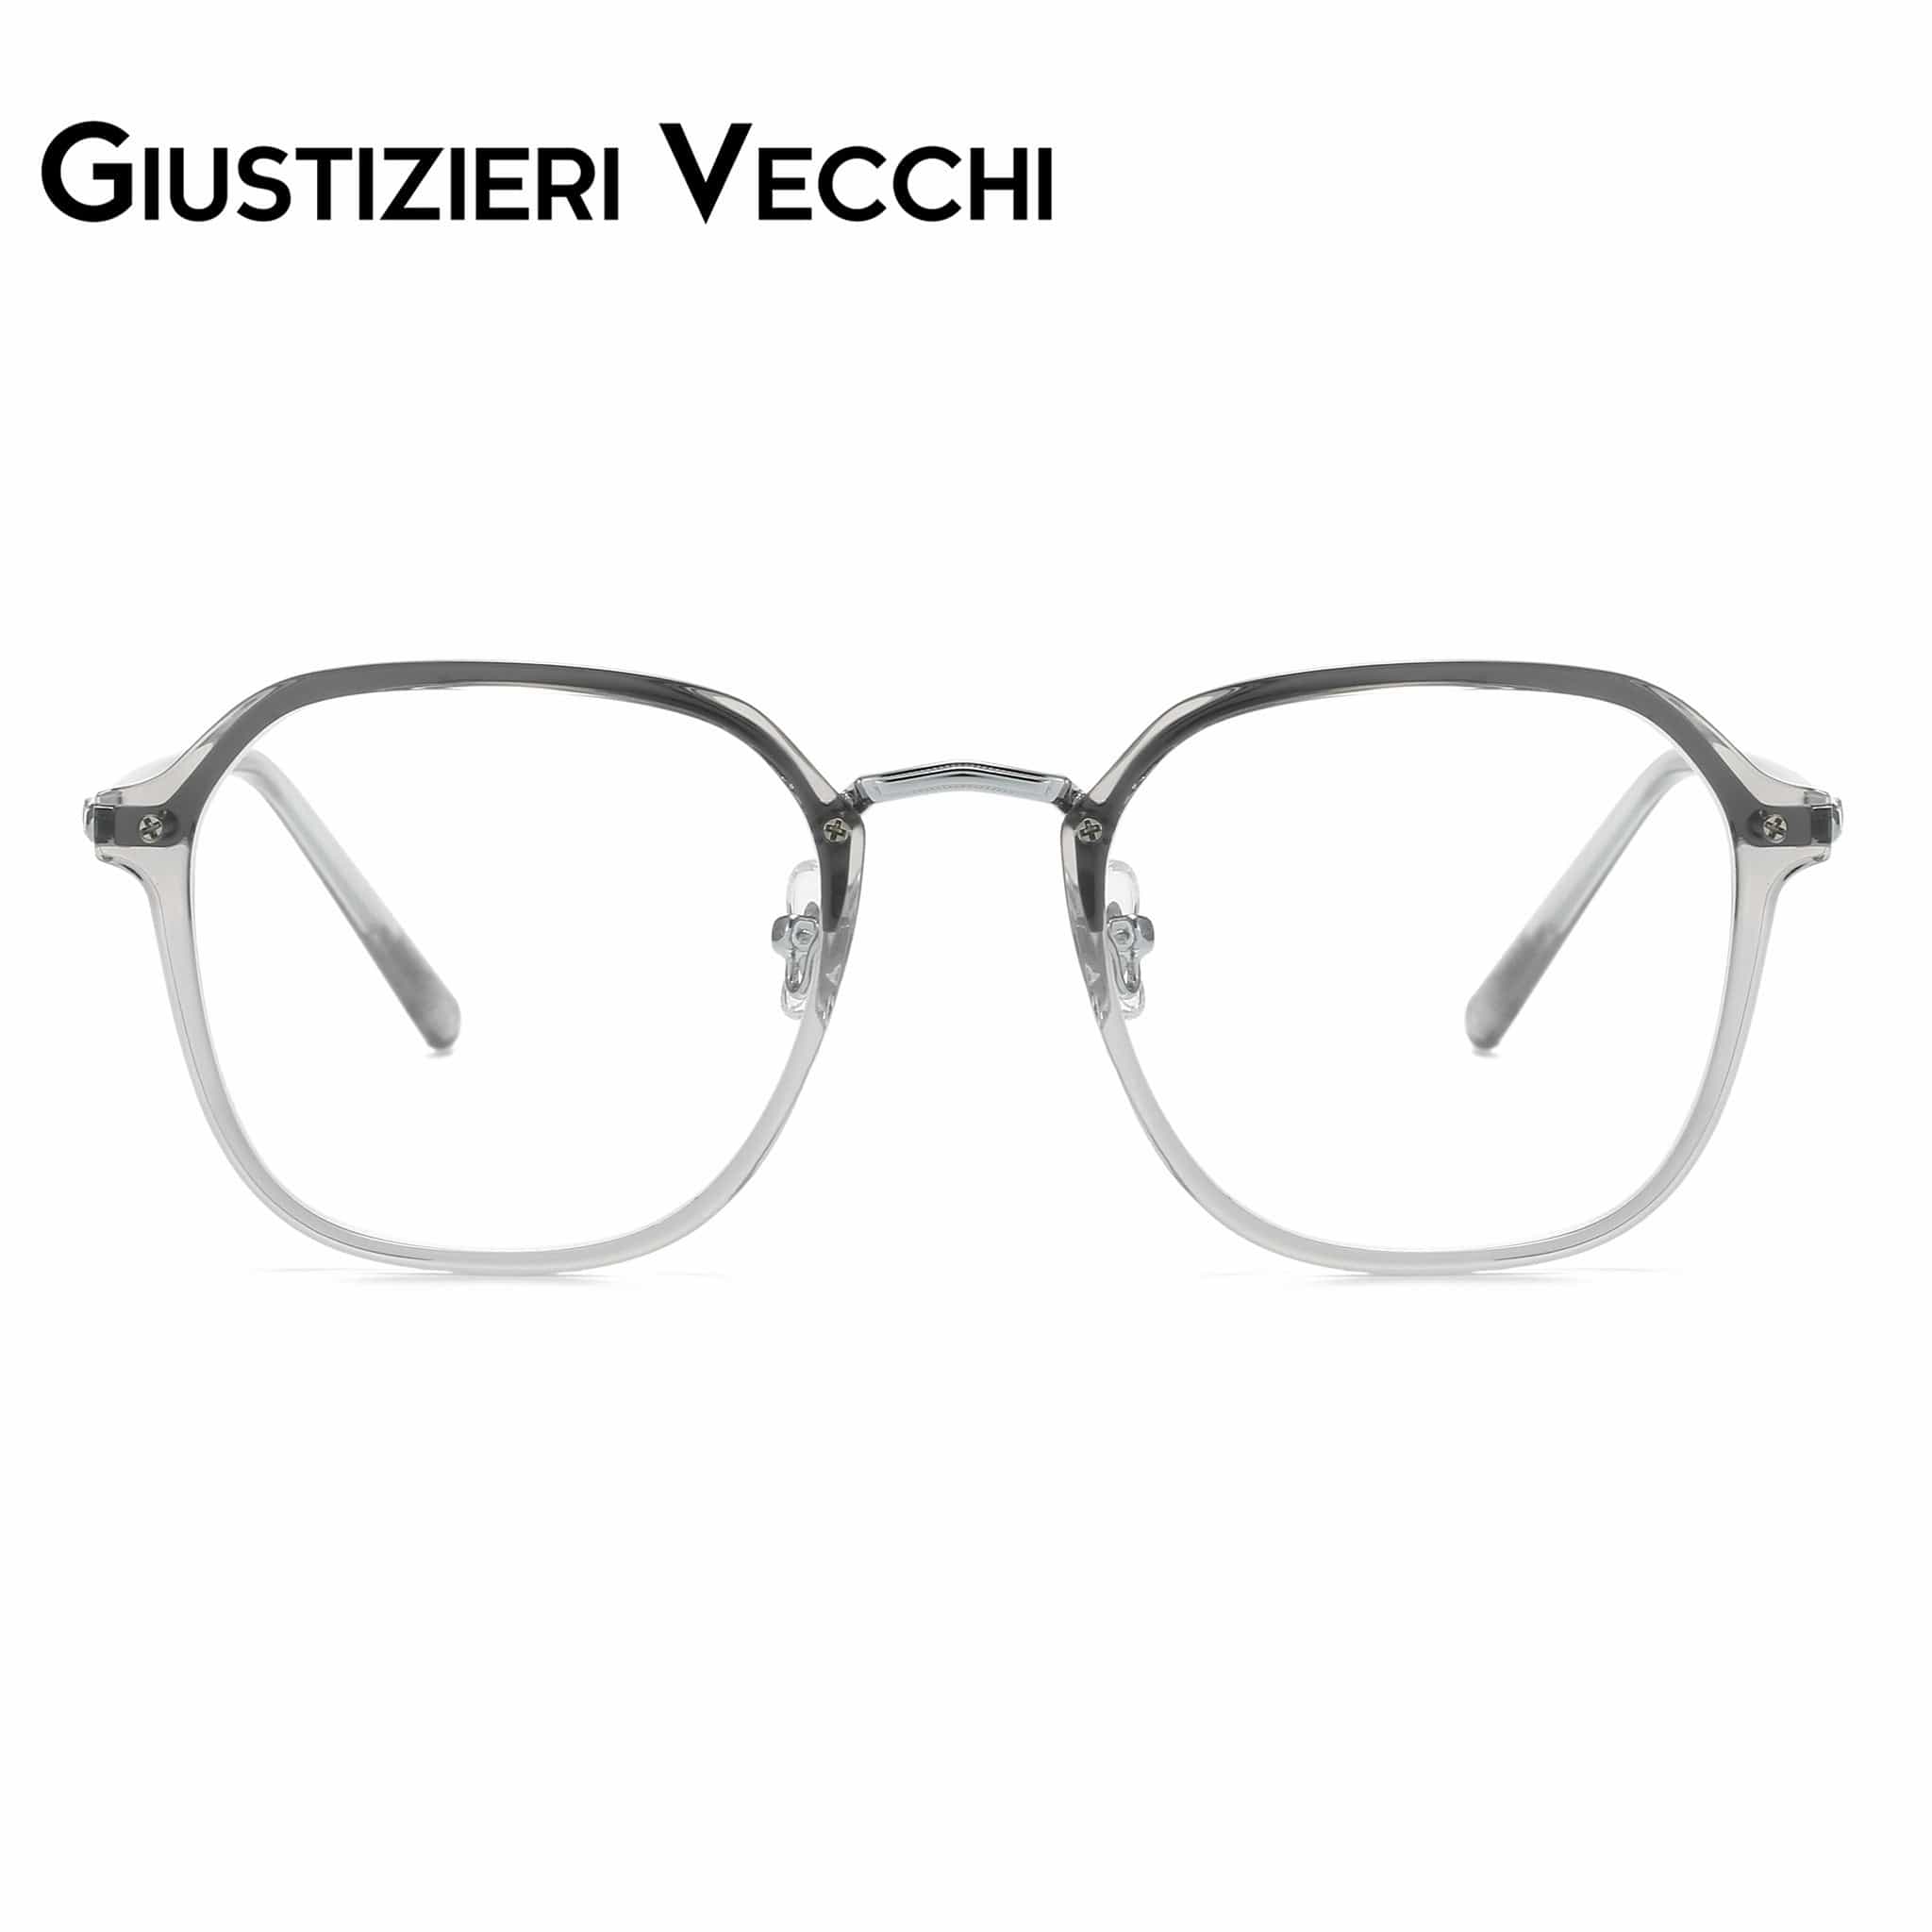 GIUSTIZIERI VECCHI Eyeglasses Small / Silver Sand Crystal ModaChic Uno